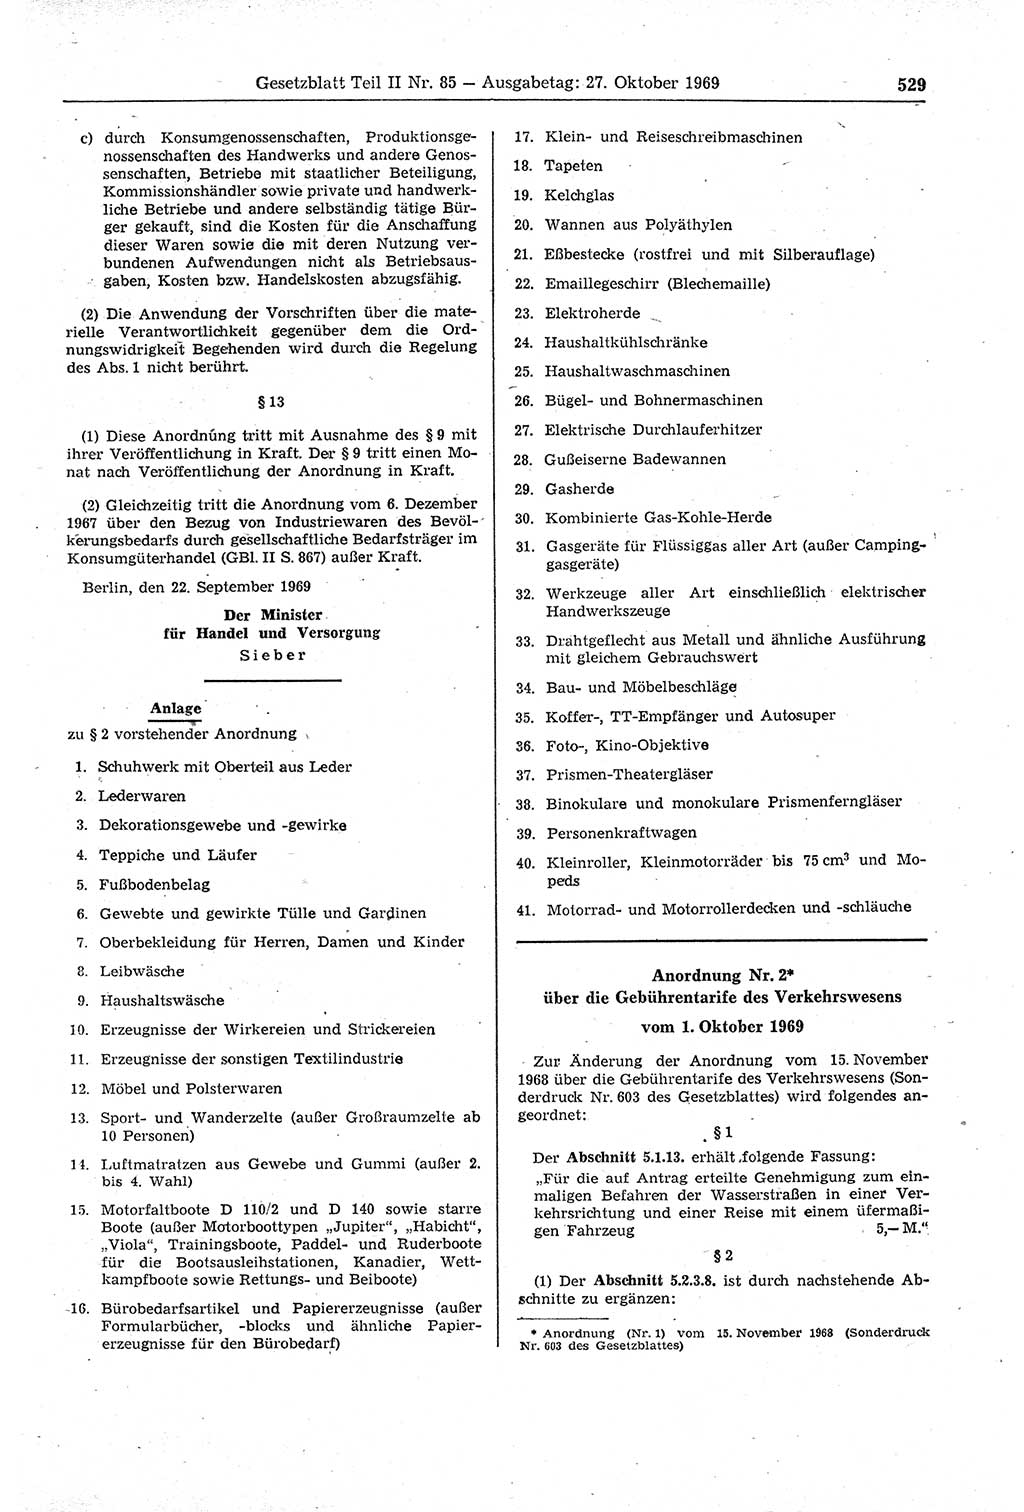 Gesetzblatt (GBl.) der Deutschen Demokratischen Republik (DDR) Teil ⅠⅠ 1969, Seite 529 (GBl. DDR ⅠⅠ 1969, S. 529)